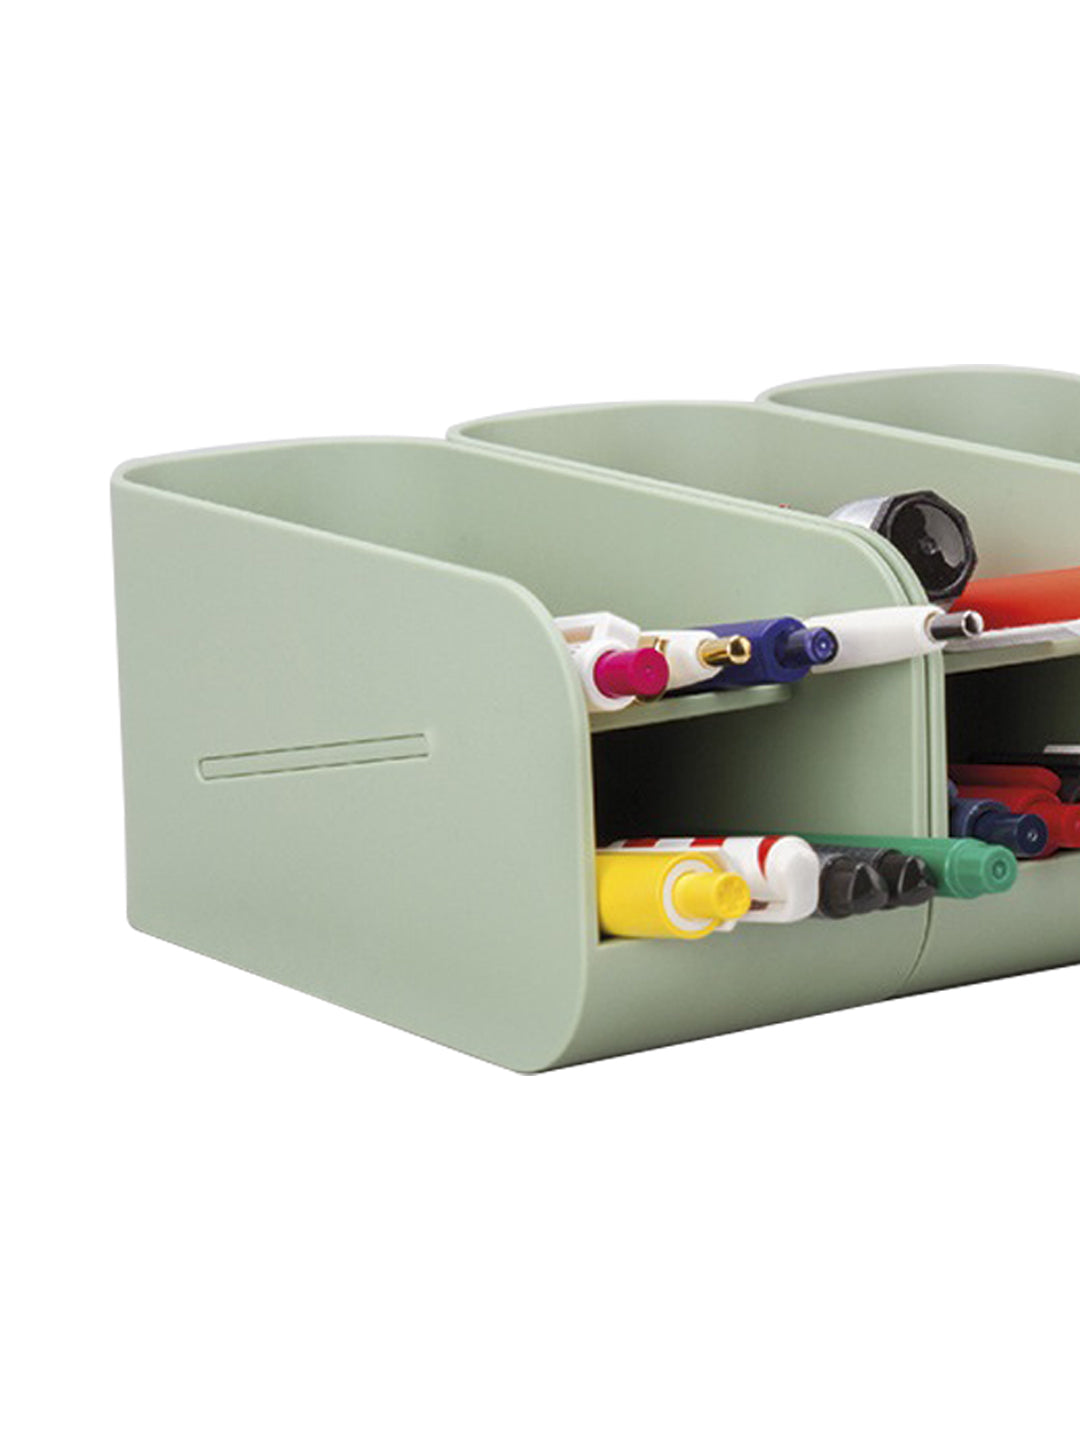 VON CASA Desk Organizer Storage Box - Green